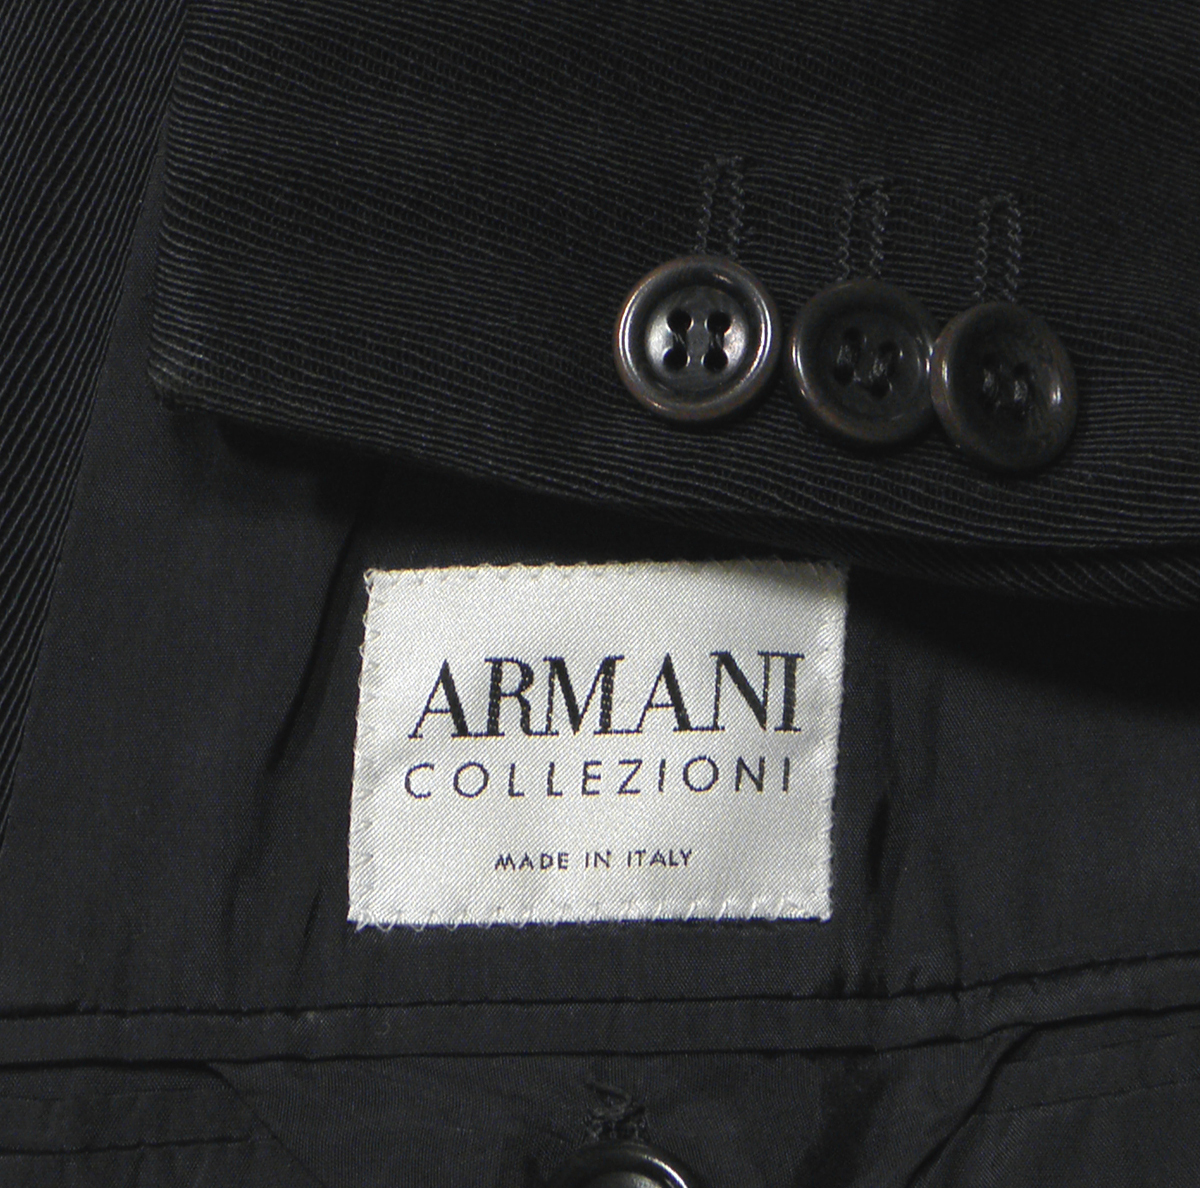 ARMANIアルマーニ最高級シングルスーツ54【美品】微光沢 ダークシャドー正規COLLEZIONI コレクションの画像5